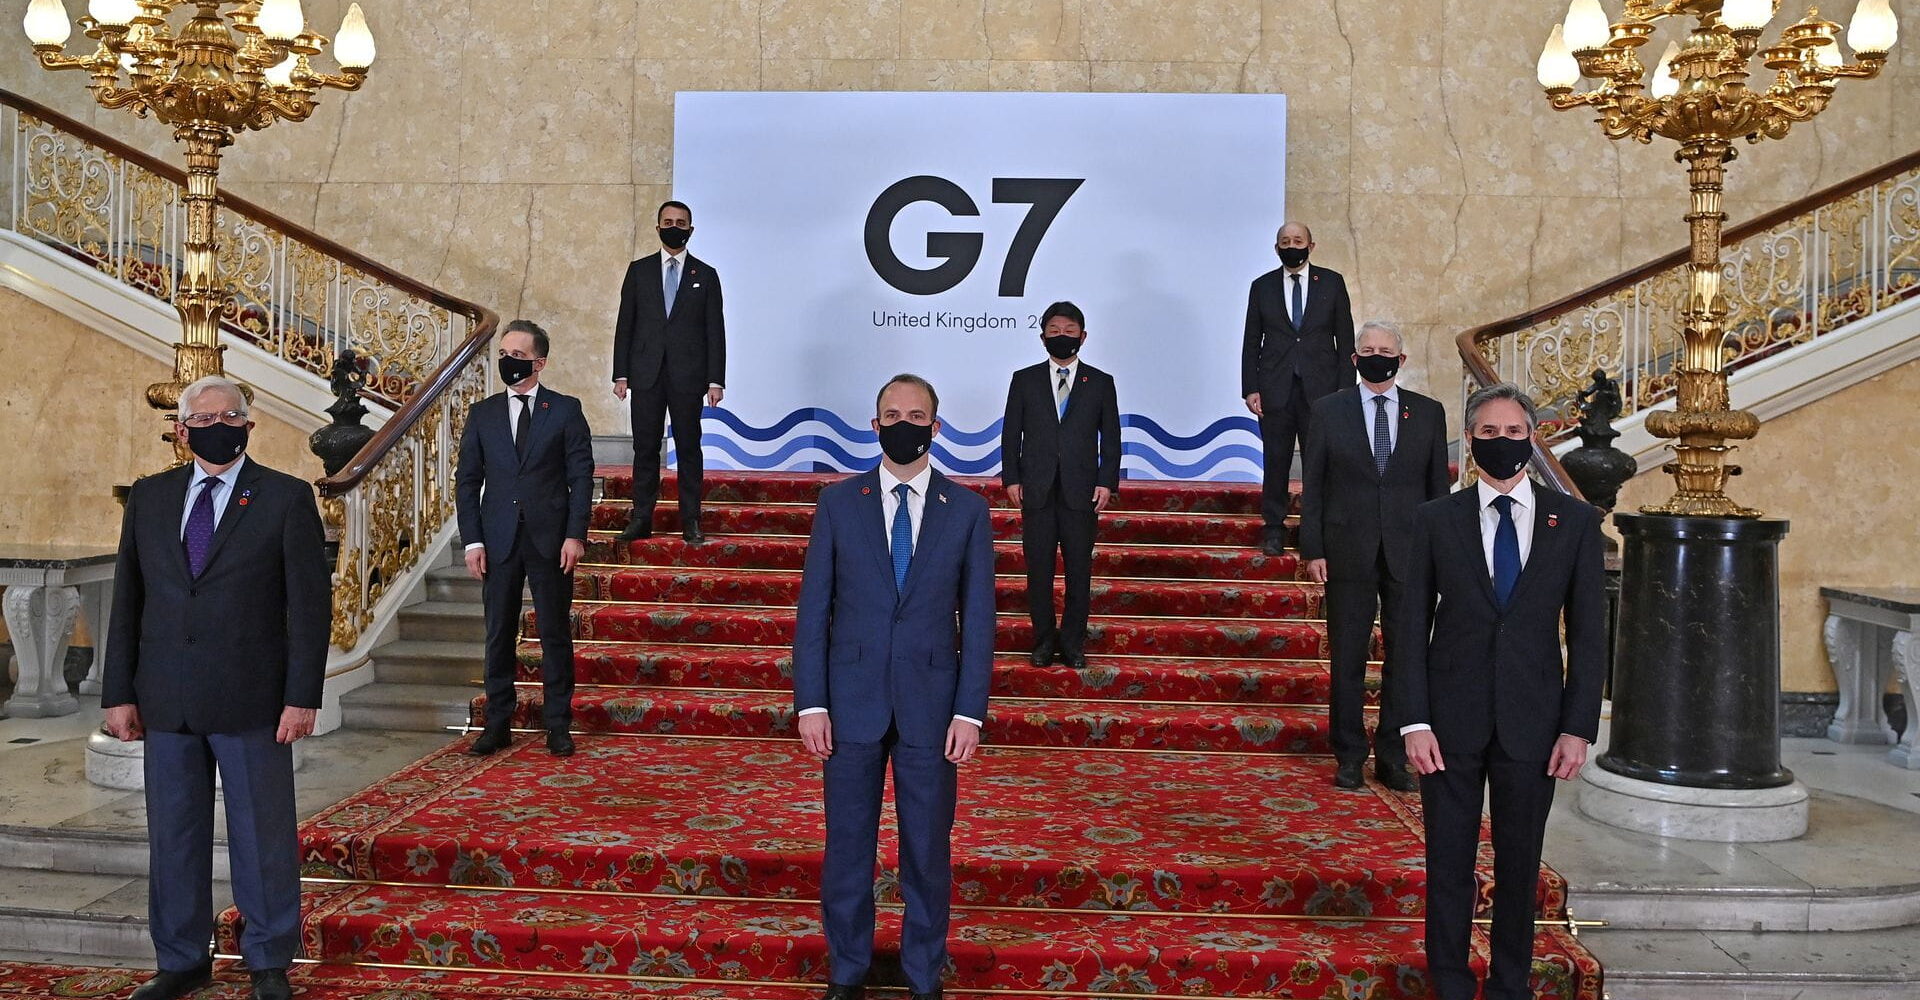 G7 leaders meet in London